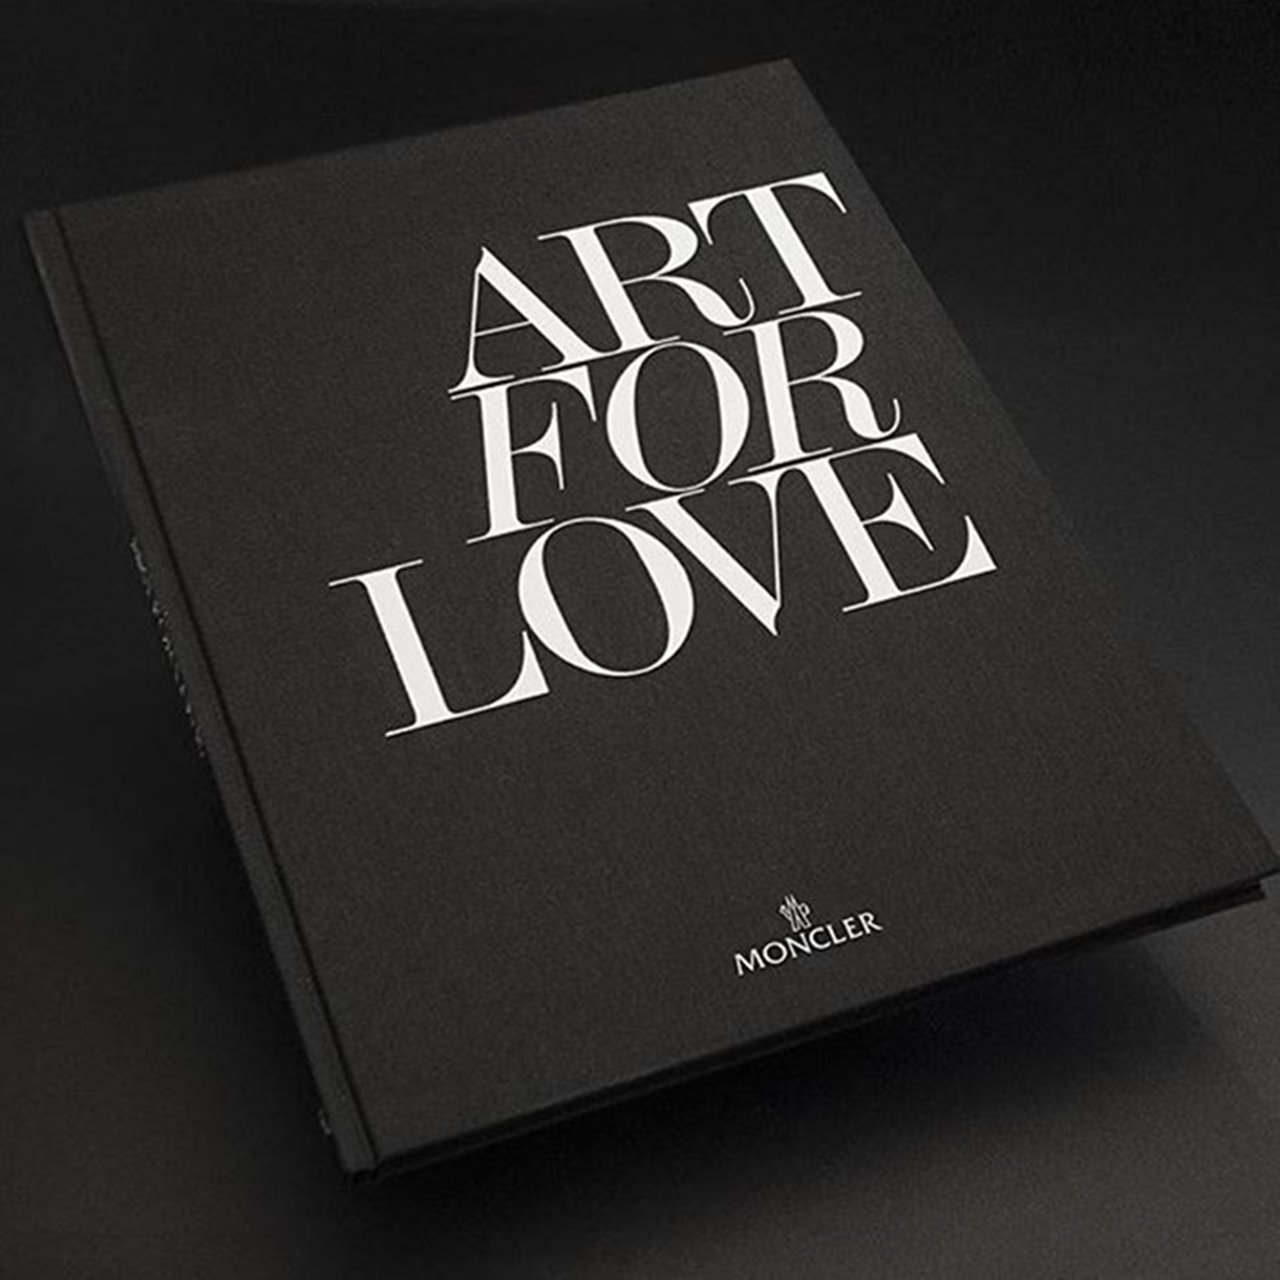 Moncler Art for Love book.jpg